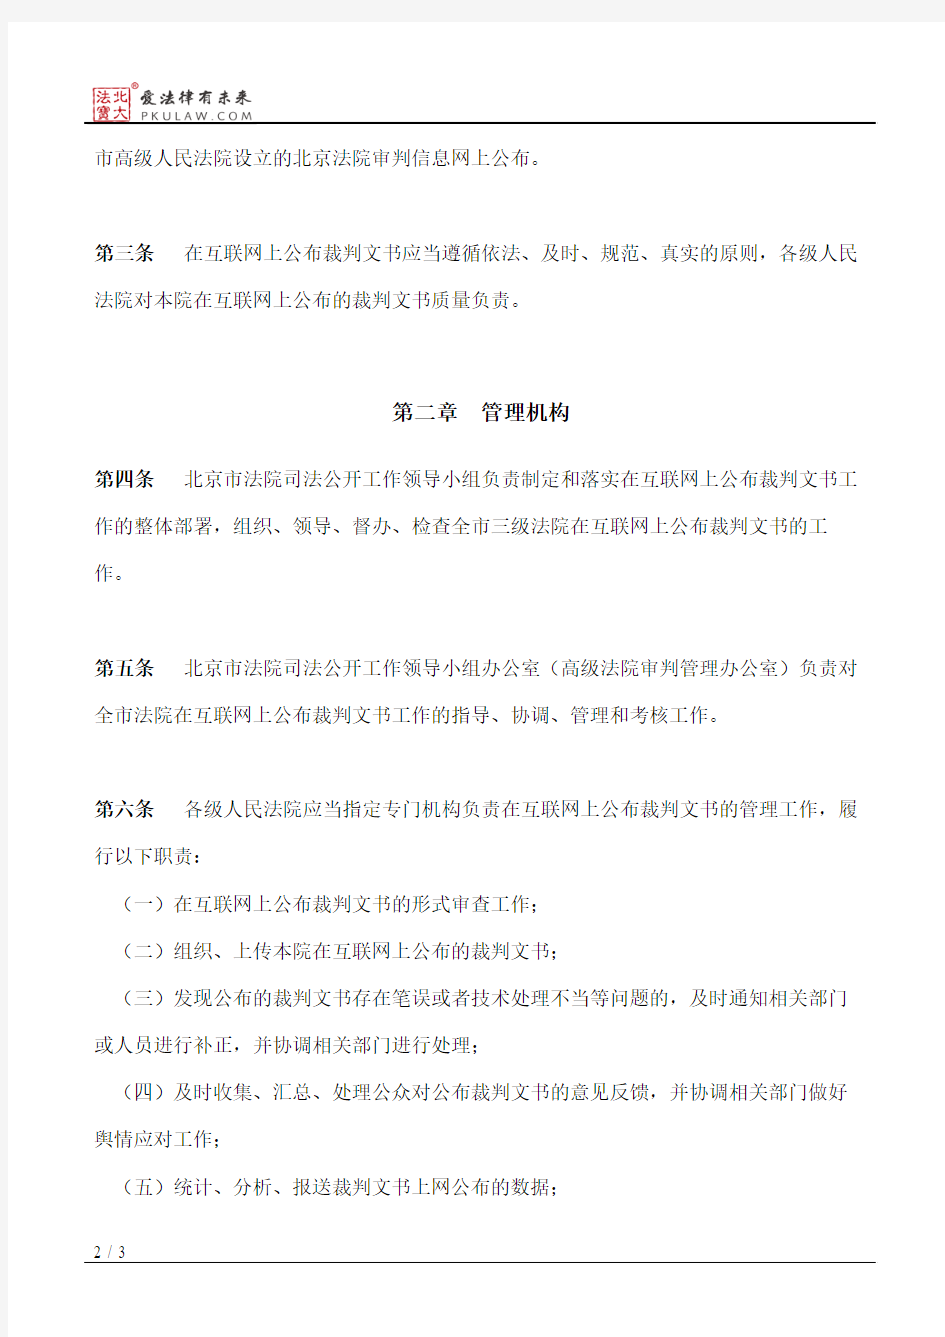 北京市高级人民法院关于人民法院在互联网公布裁判文书规定的实施